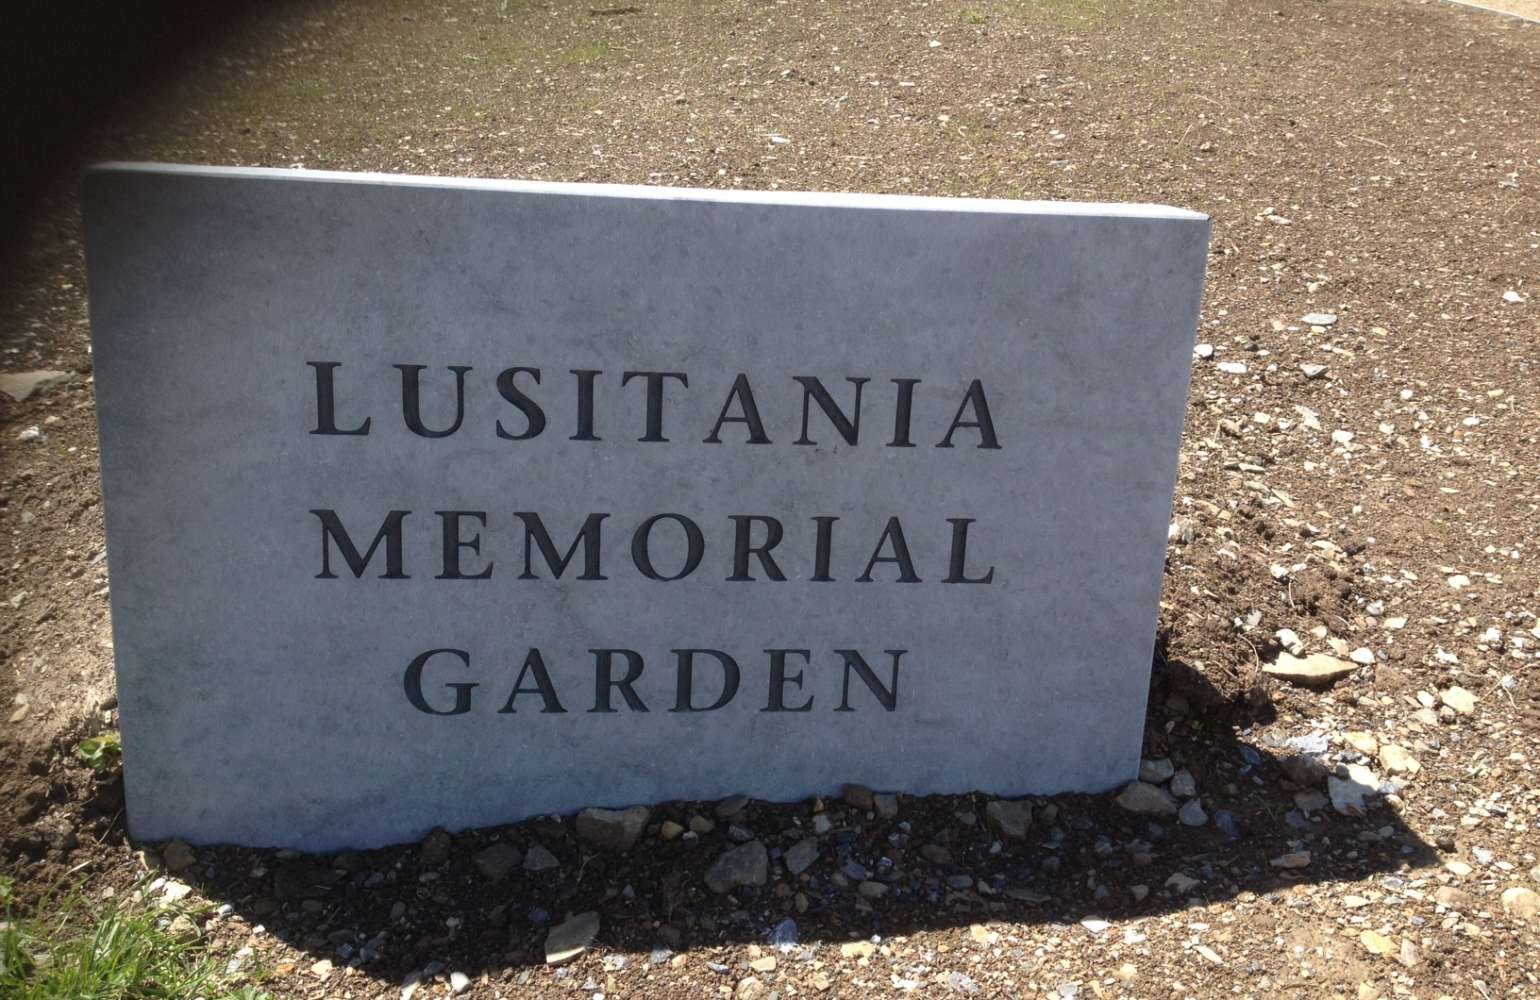 Lusitania Memorial Garden